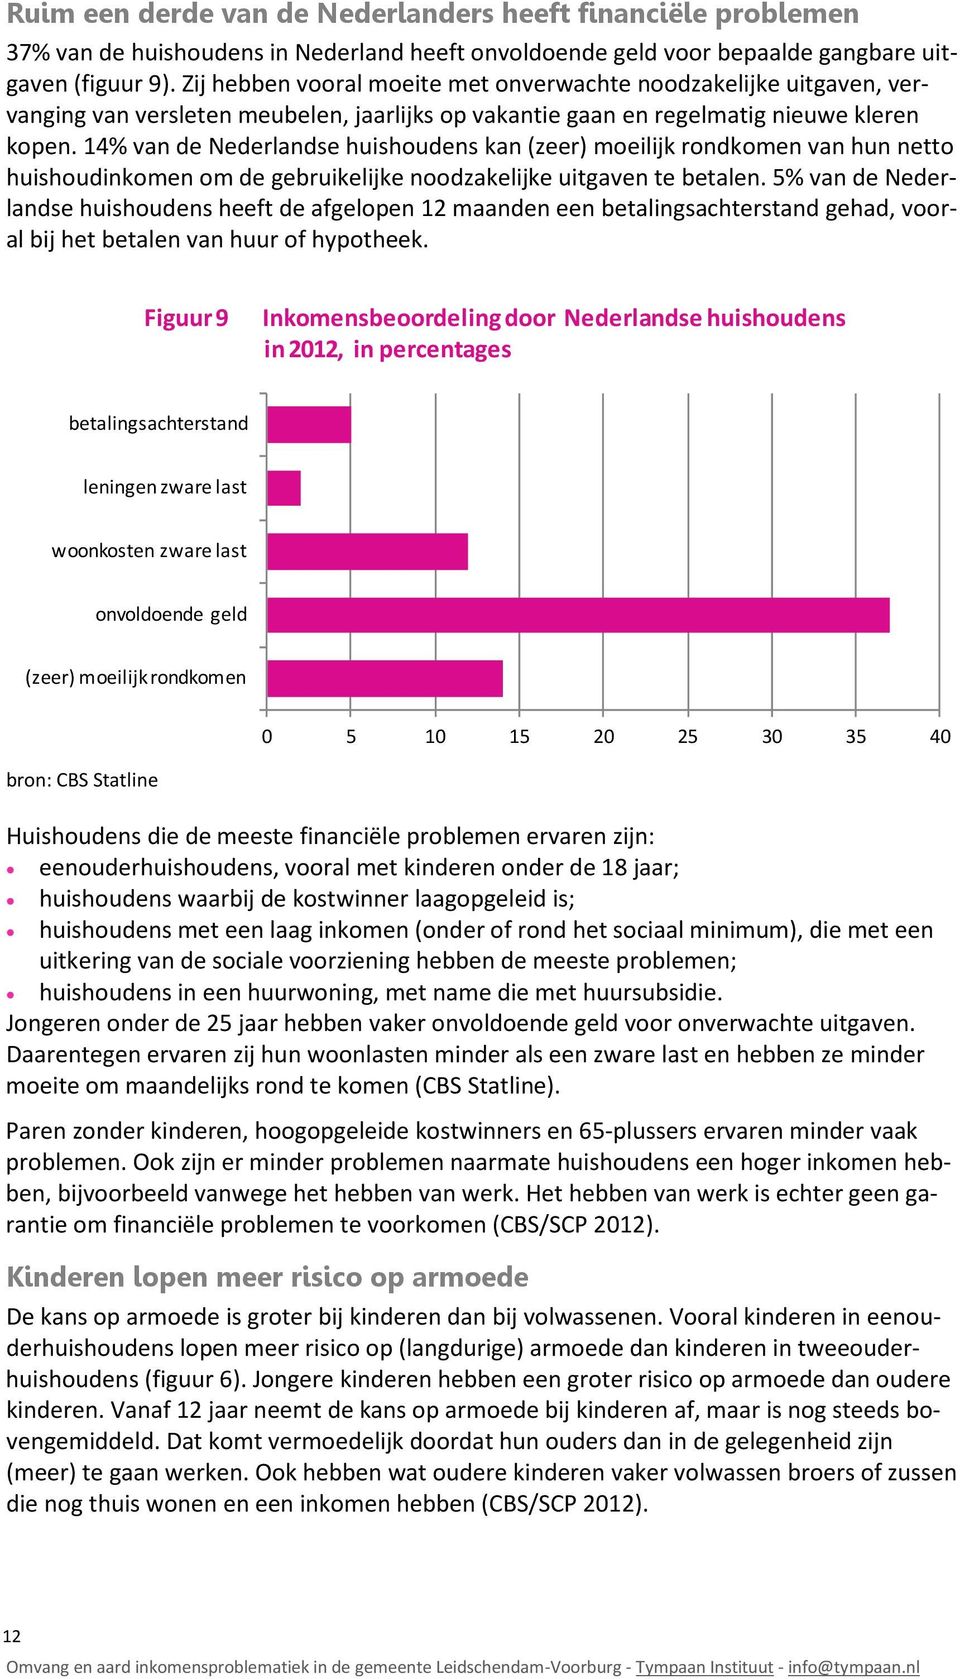 14% van de Nederlandse huishoudens kan (zeer) moeilijk rondkomen van hun netto huishoudinkomen om de gebruikelijke noodzakelijke uitgaven te betalen.